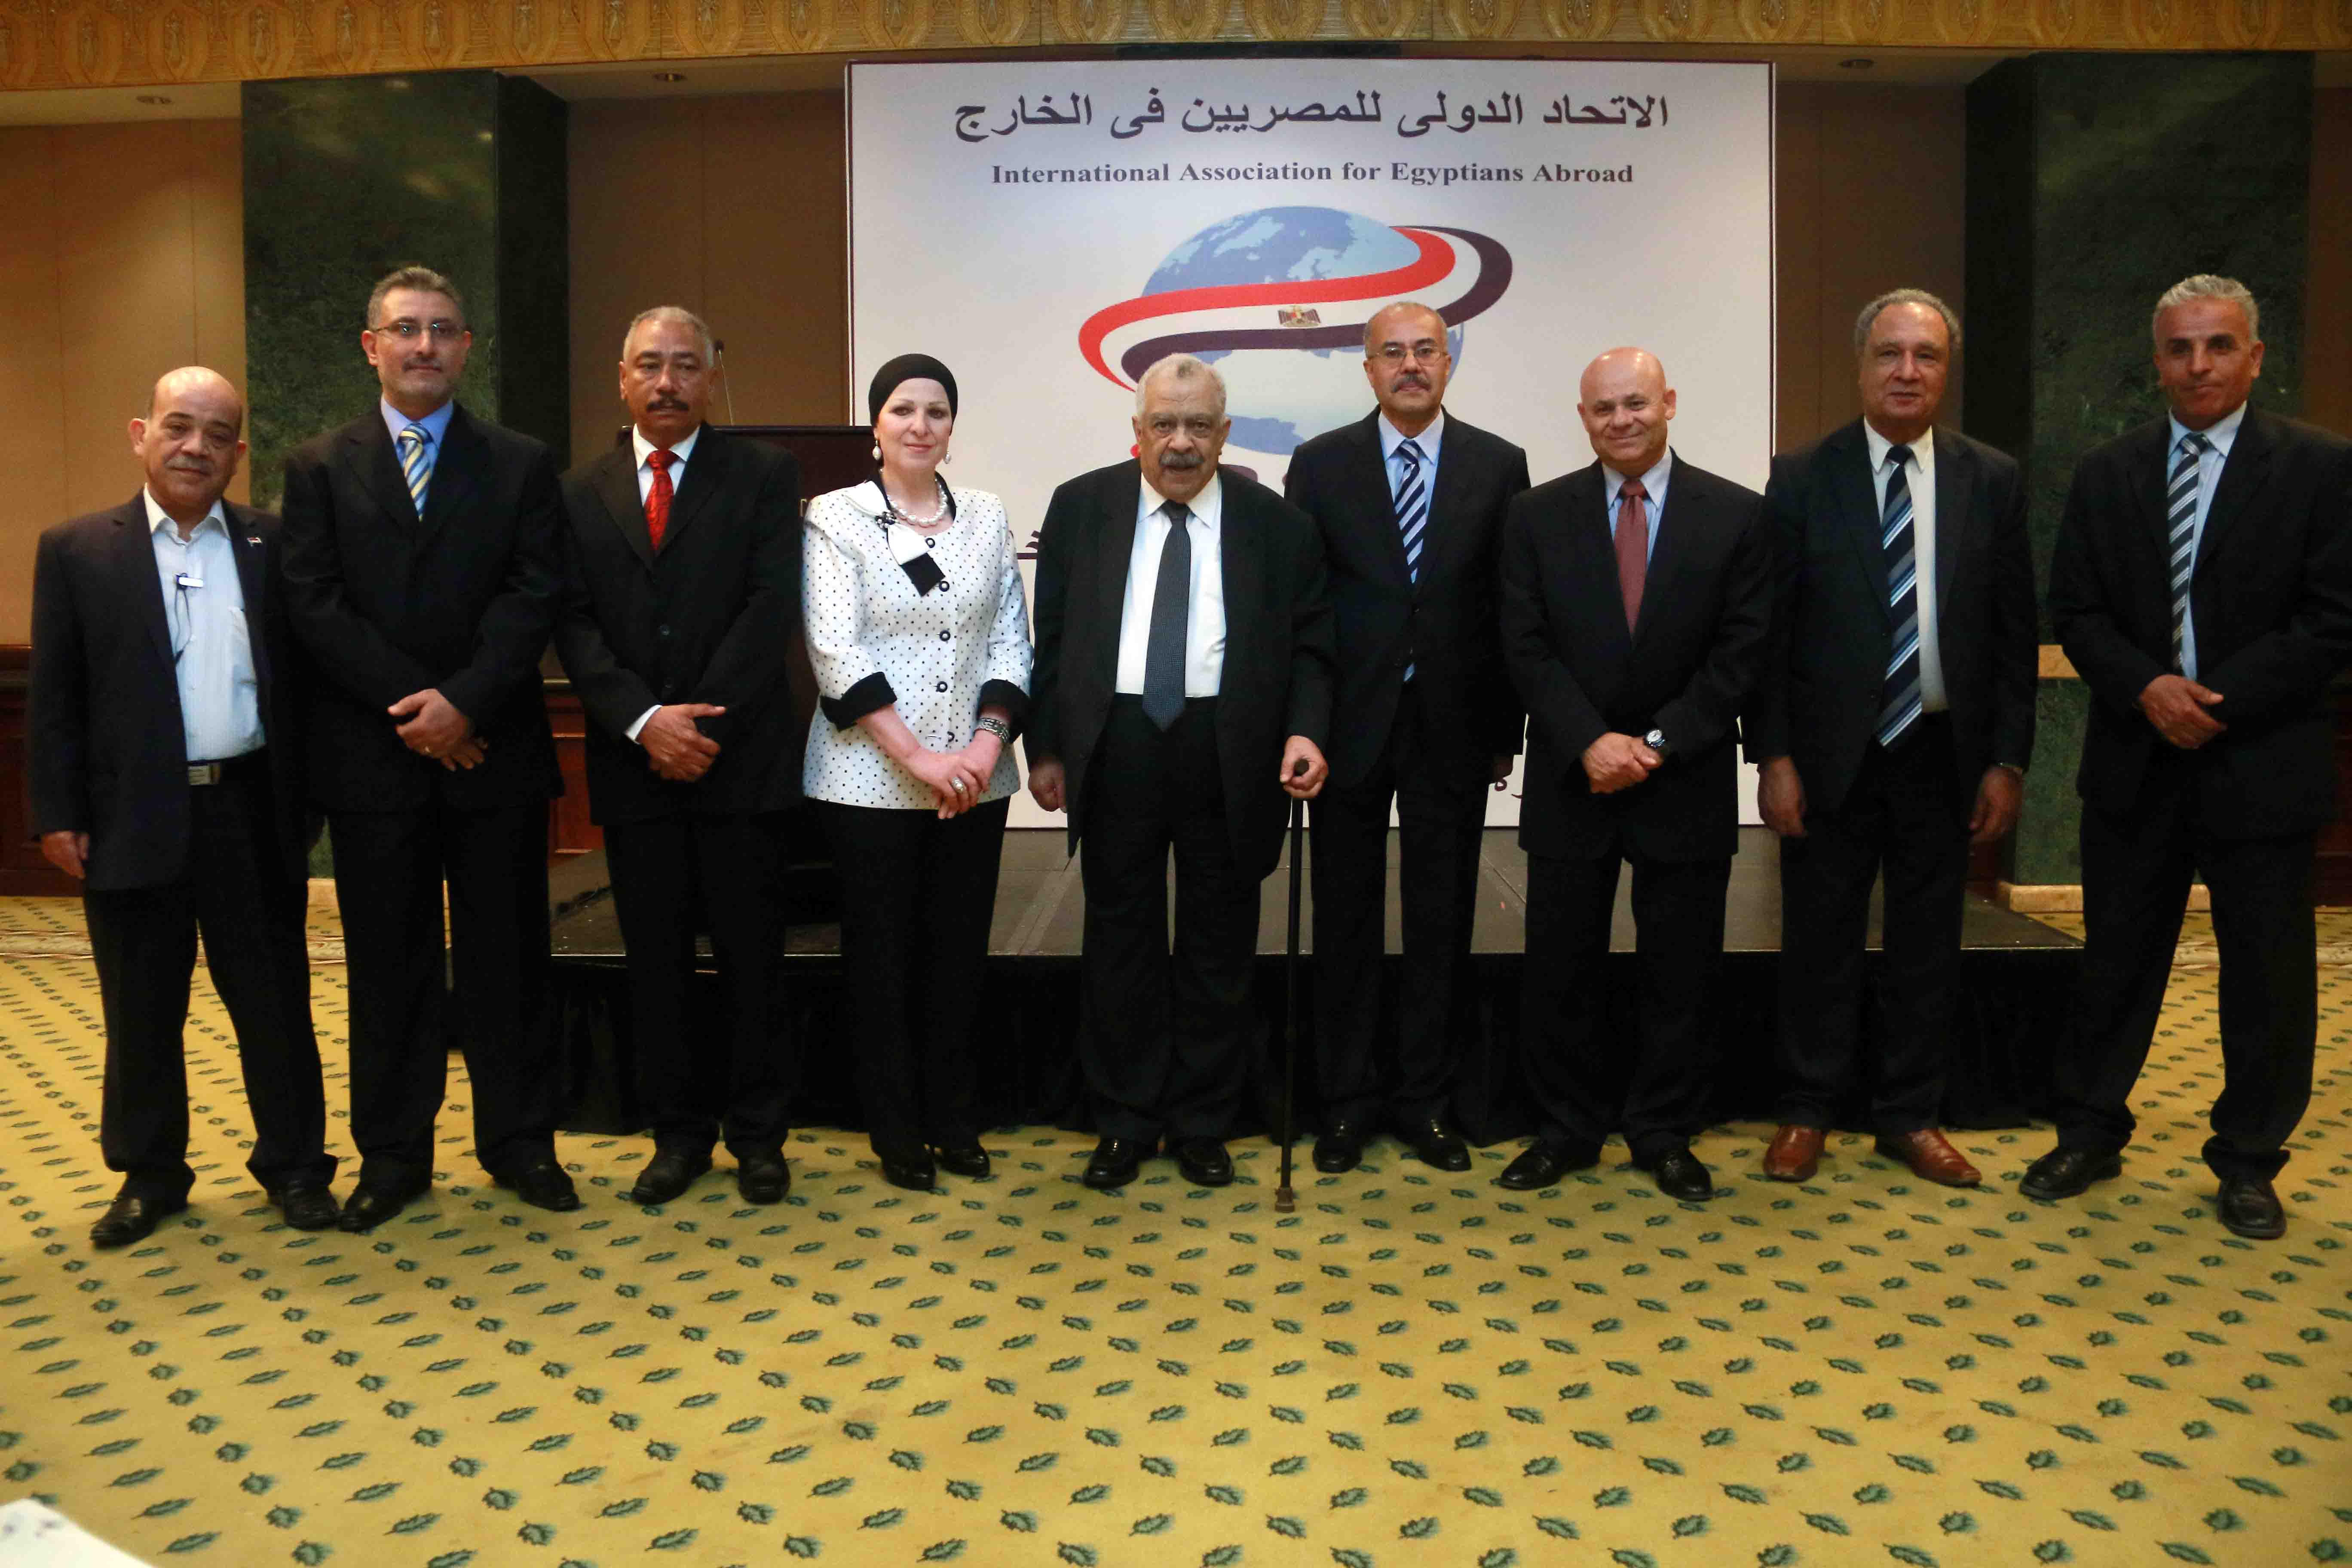 مؤتمر الاتحاد الدولى للمصريين بالخارج تصوير عماد عبدالرحمن 14يونيو (23)